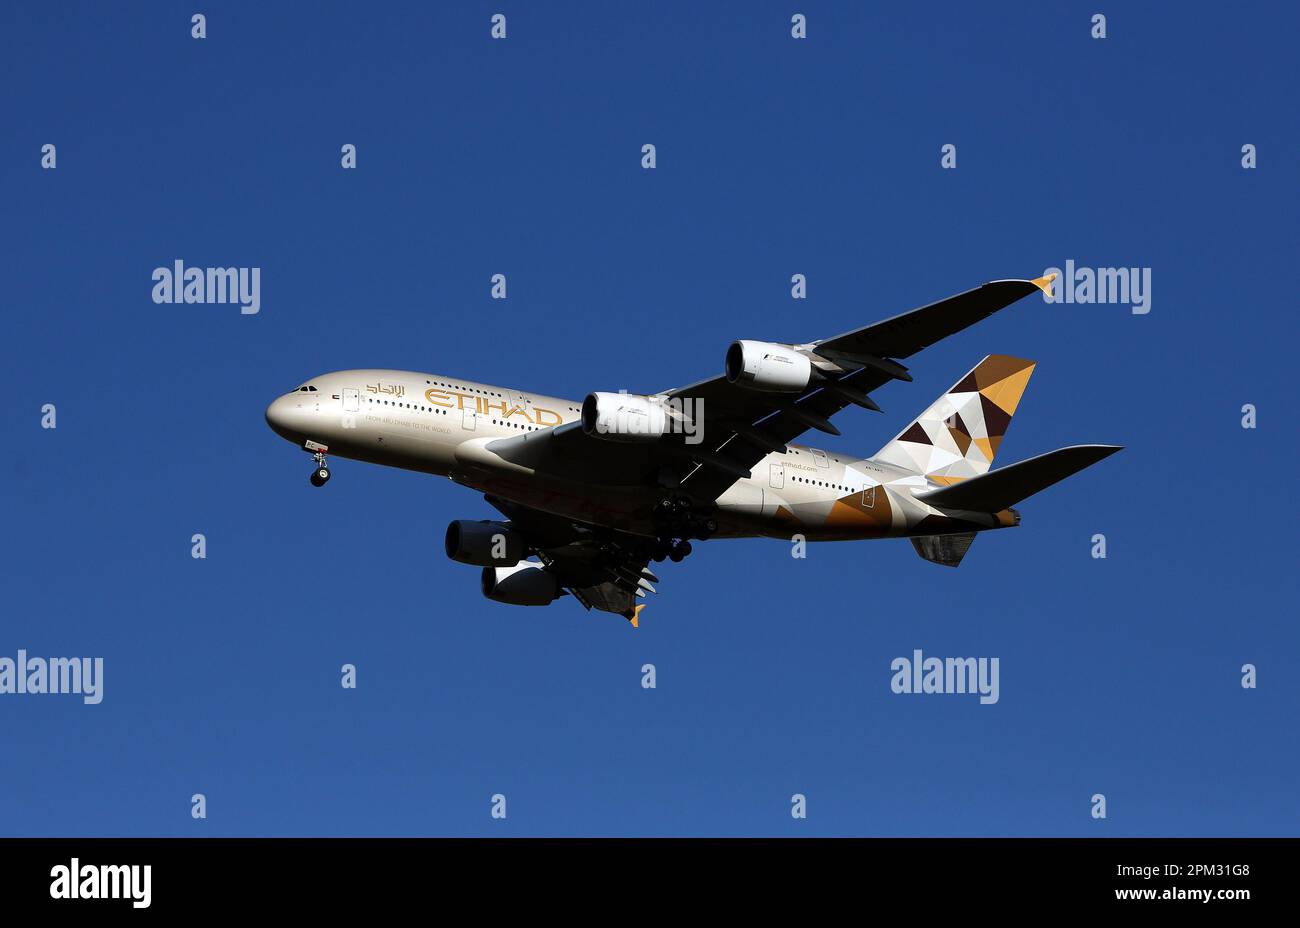 Photo du dossier datée du 28/01/16, d'un avion Etihad Airways Airbus A380-861 arrivant à l'aéroport de Heathrow. Les publicités pour Etihad ont été interdites pour avoir fait des allégations exagérées sur les efforts de la compagnie aérienne pour parvenir à un « aviation durable ». Date de publication : mardi 11 avril 2023. Banque D'Images